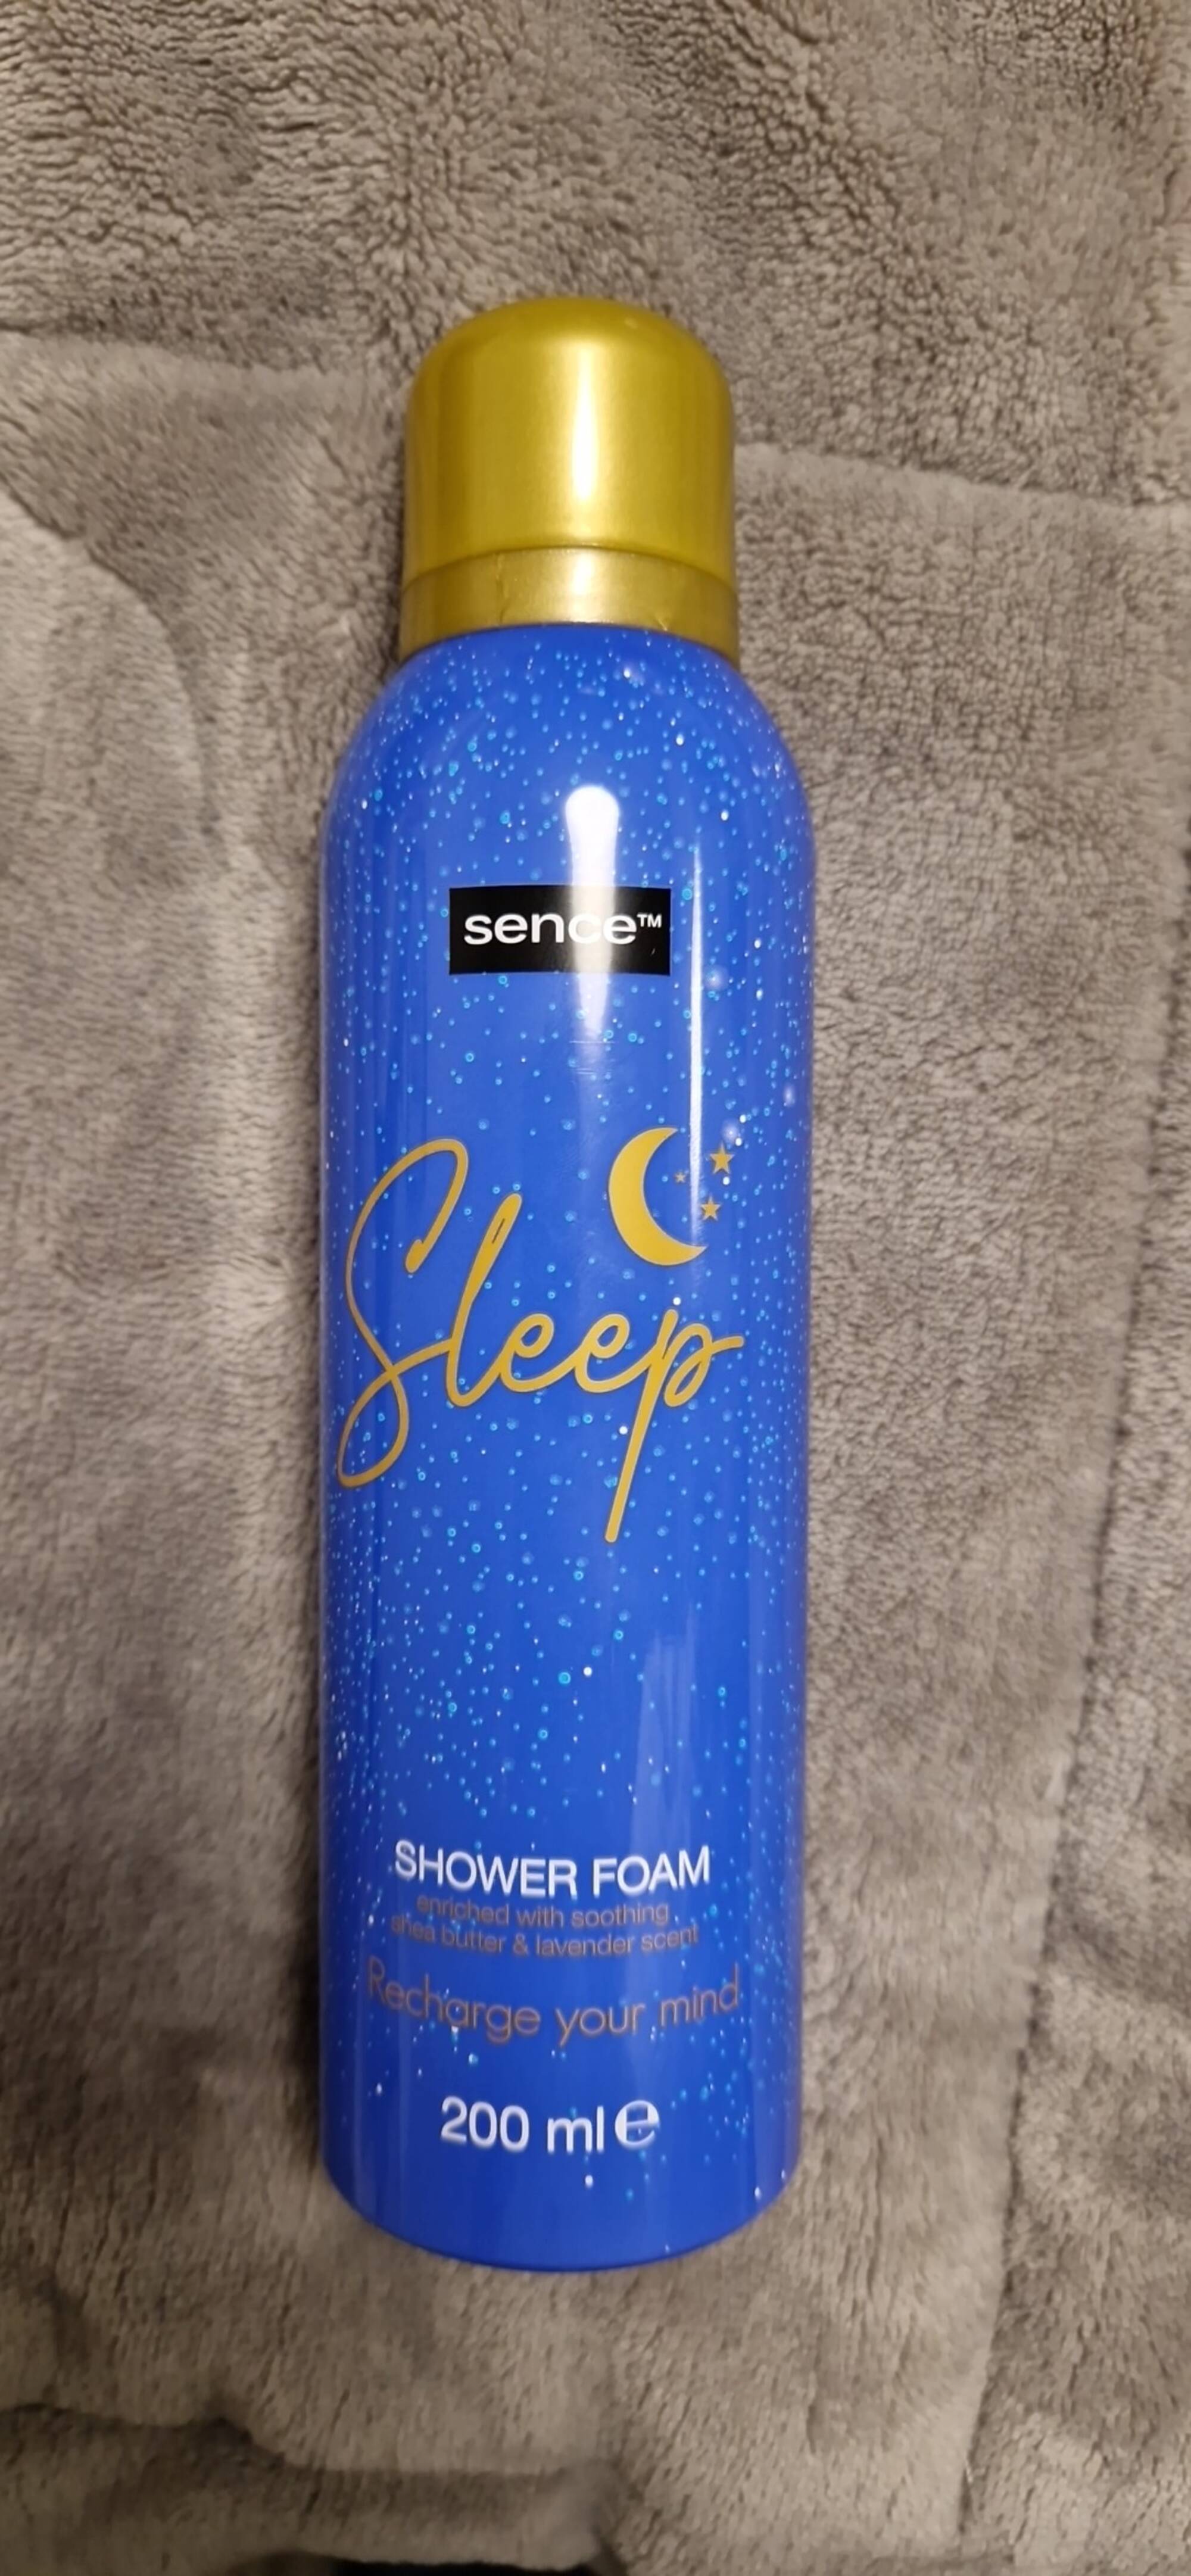 SENCE - Sleep - Shower foam 